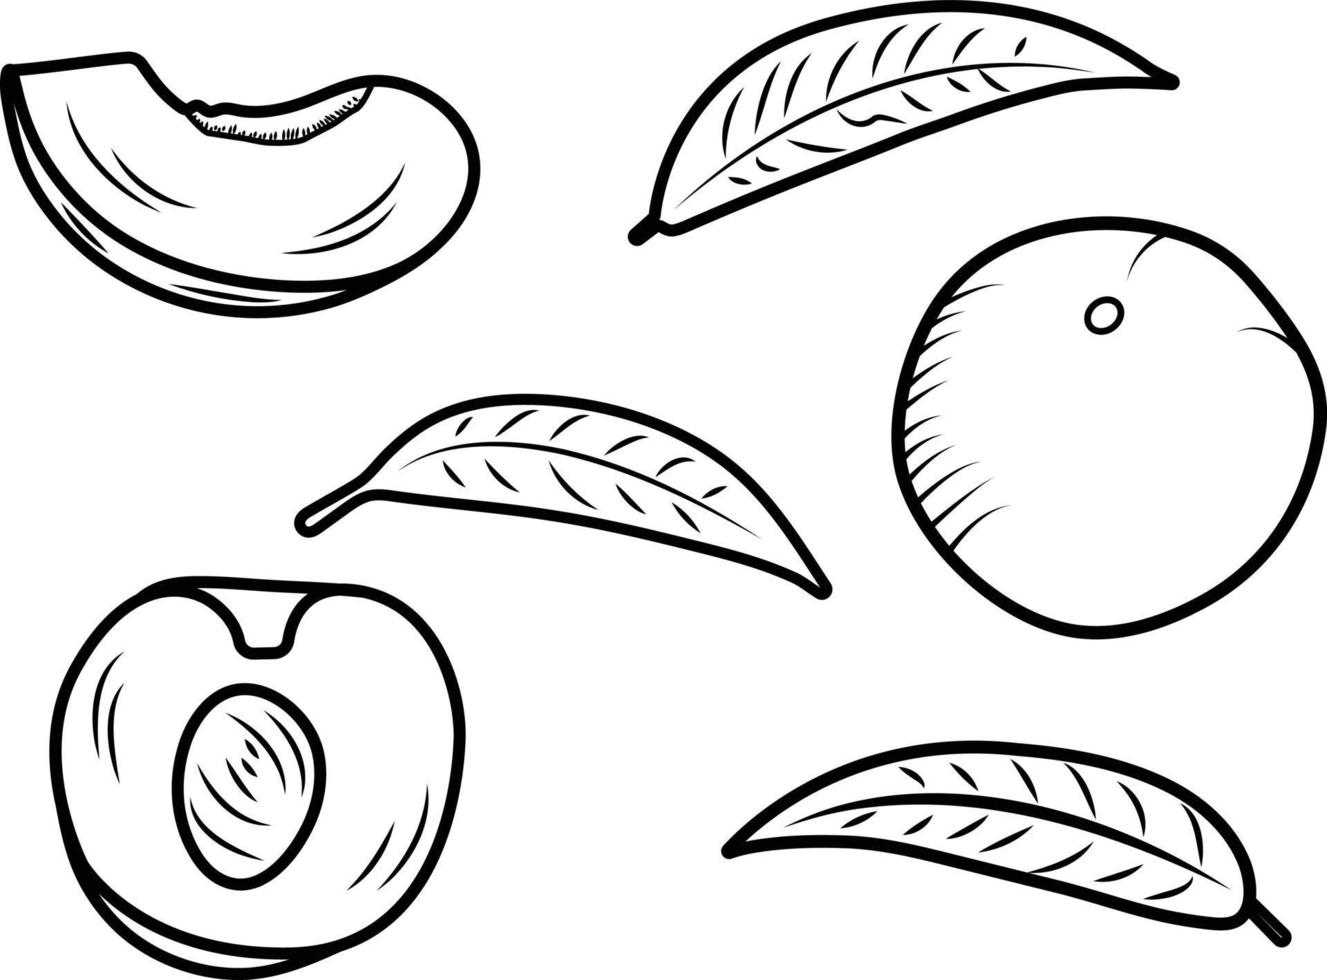 persika eller aprikos full, halv och skiva med löv. vektor illustration